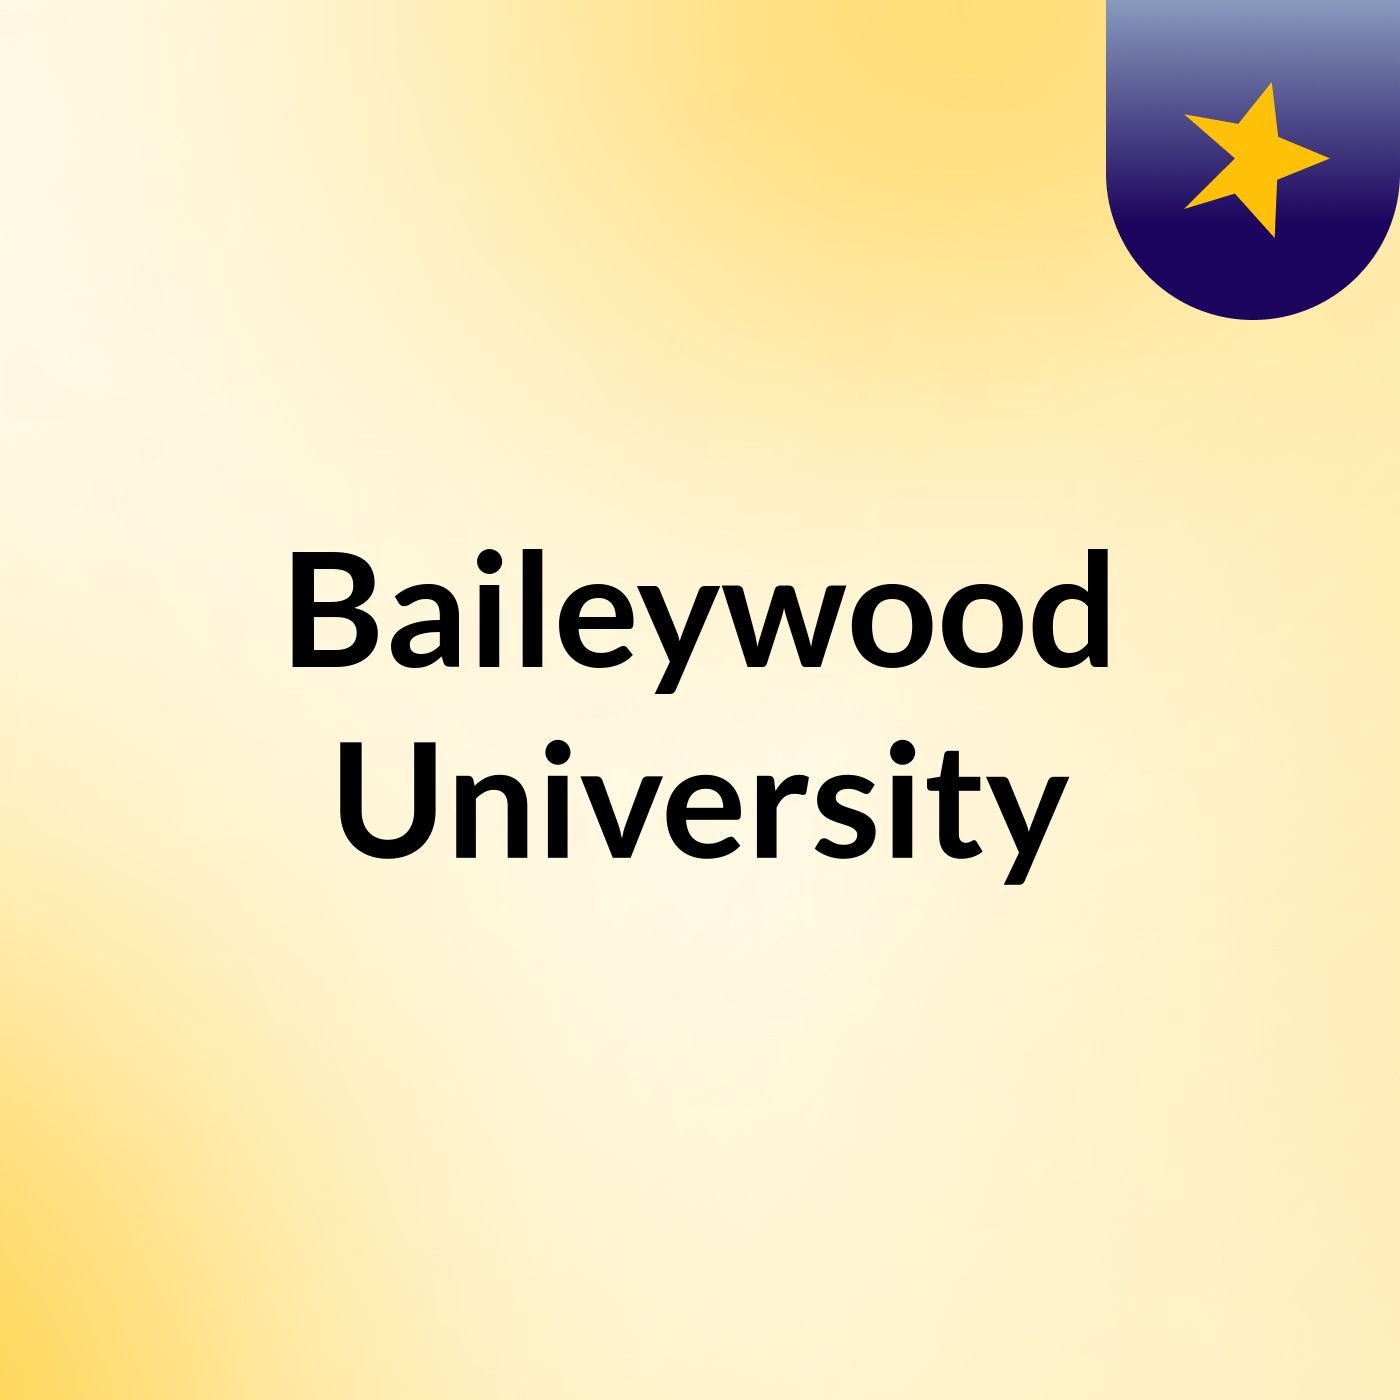 Baileywood University